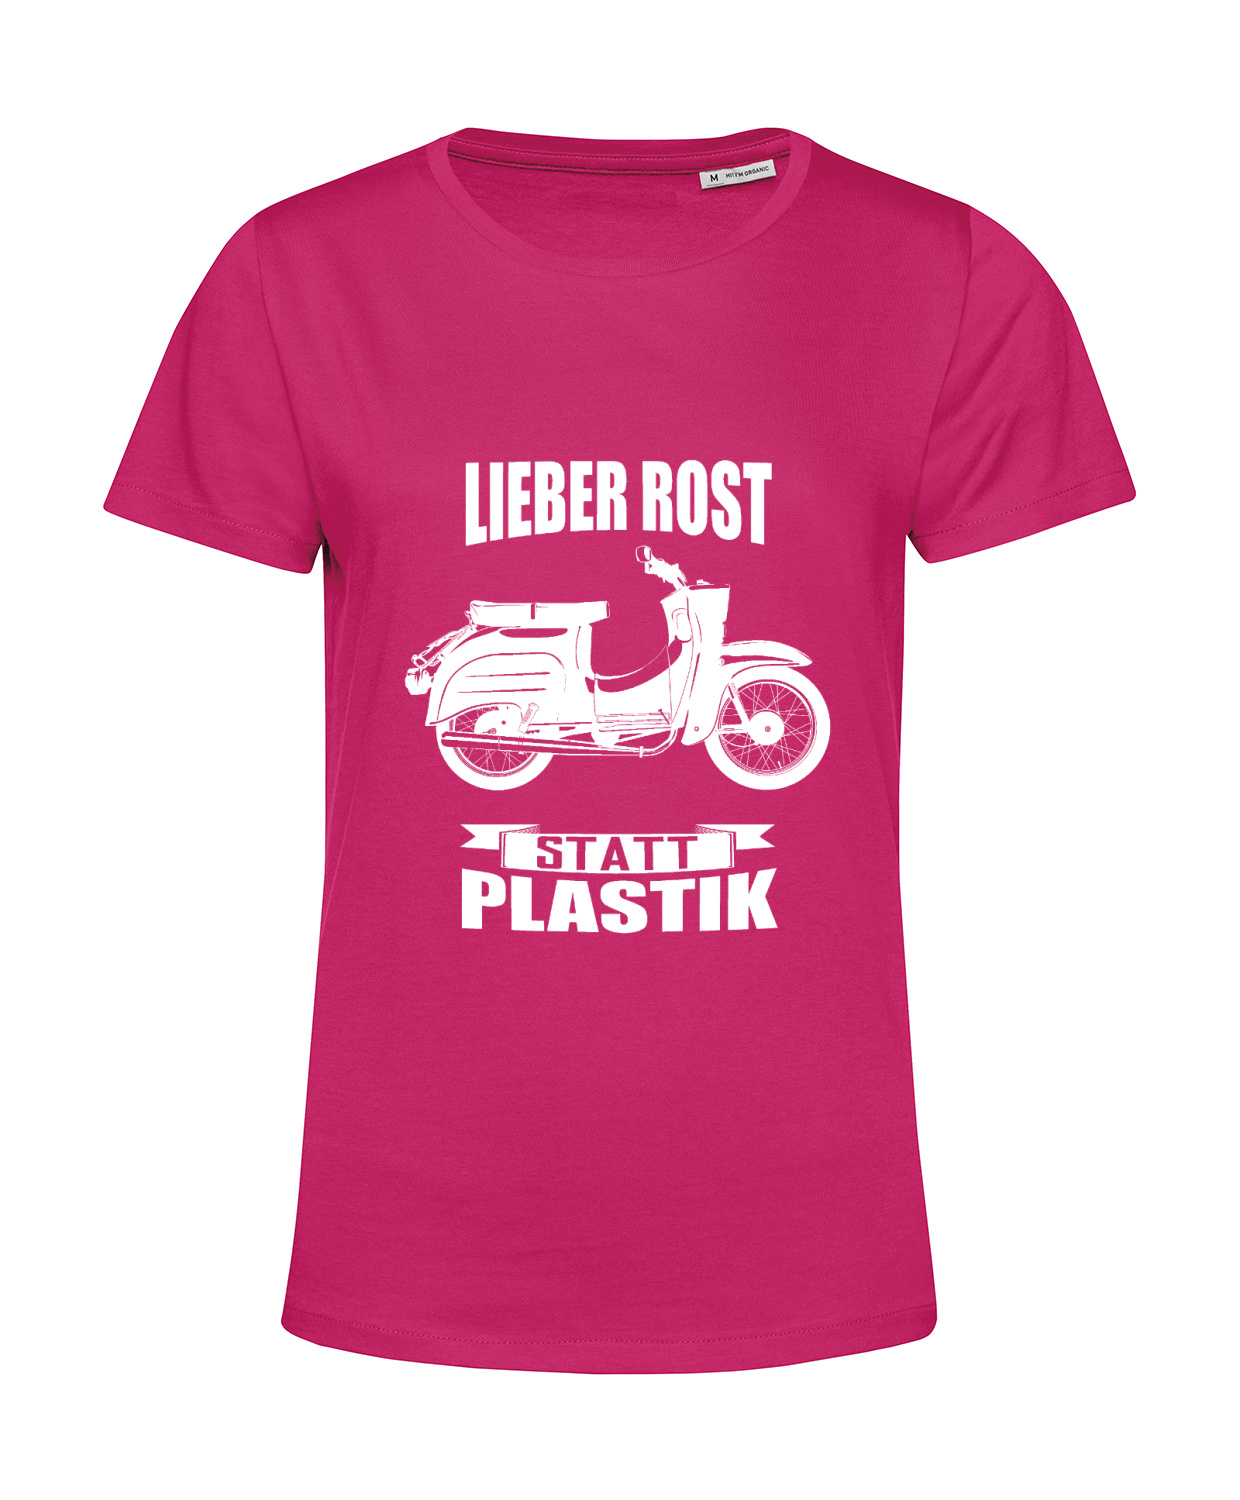 Nachhaltiges T-Shirt Damen 2Takter - Lieber Rost statt Plastik Schwalbe